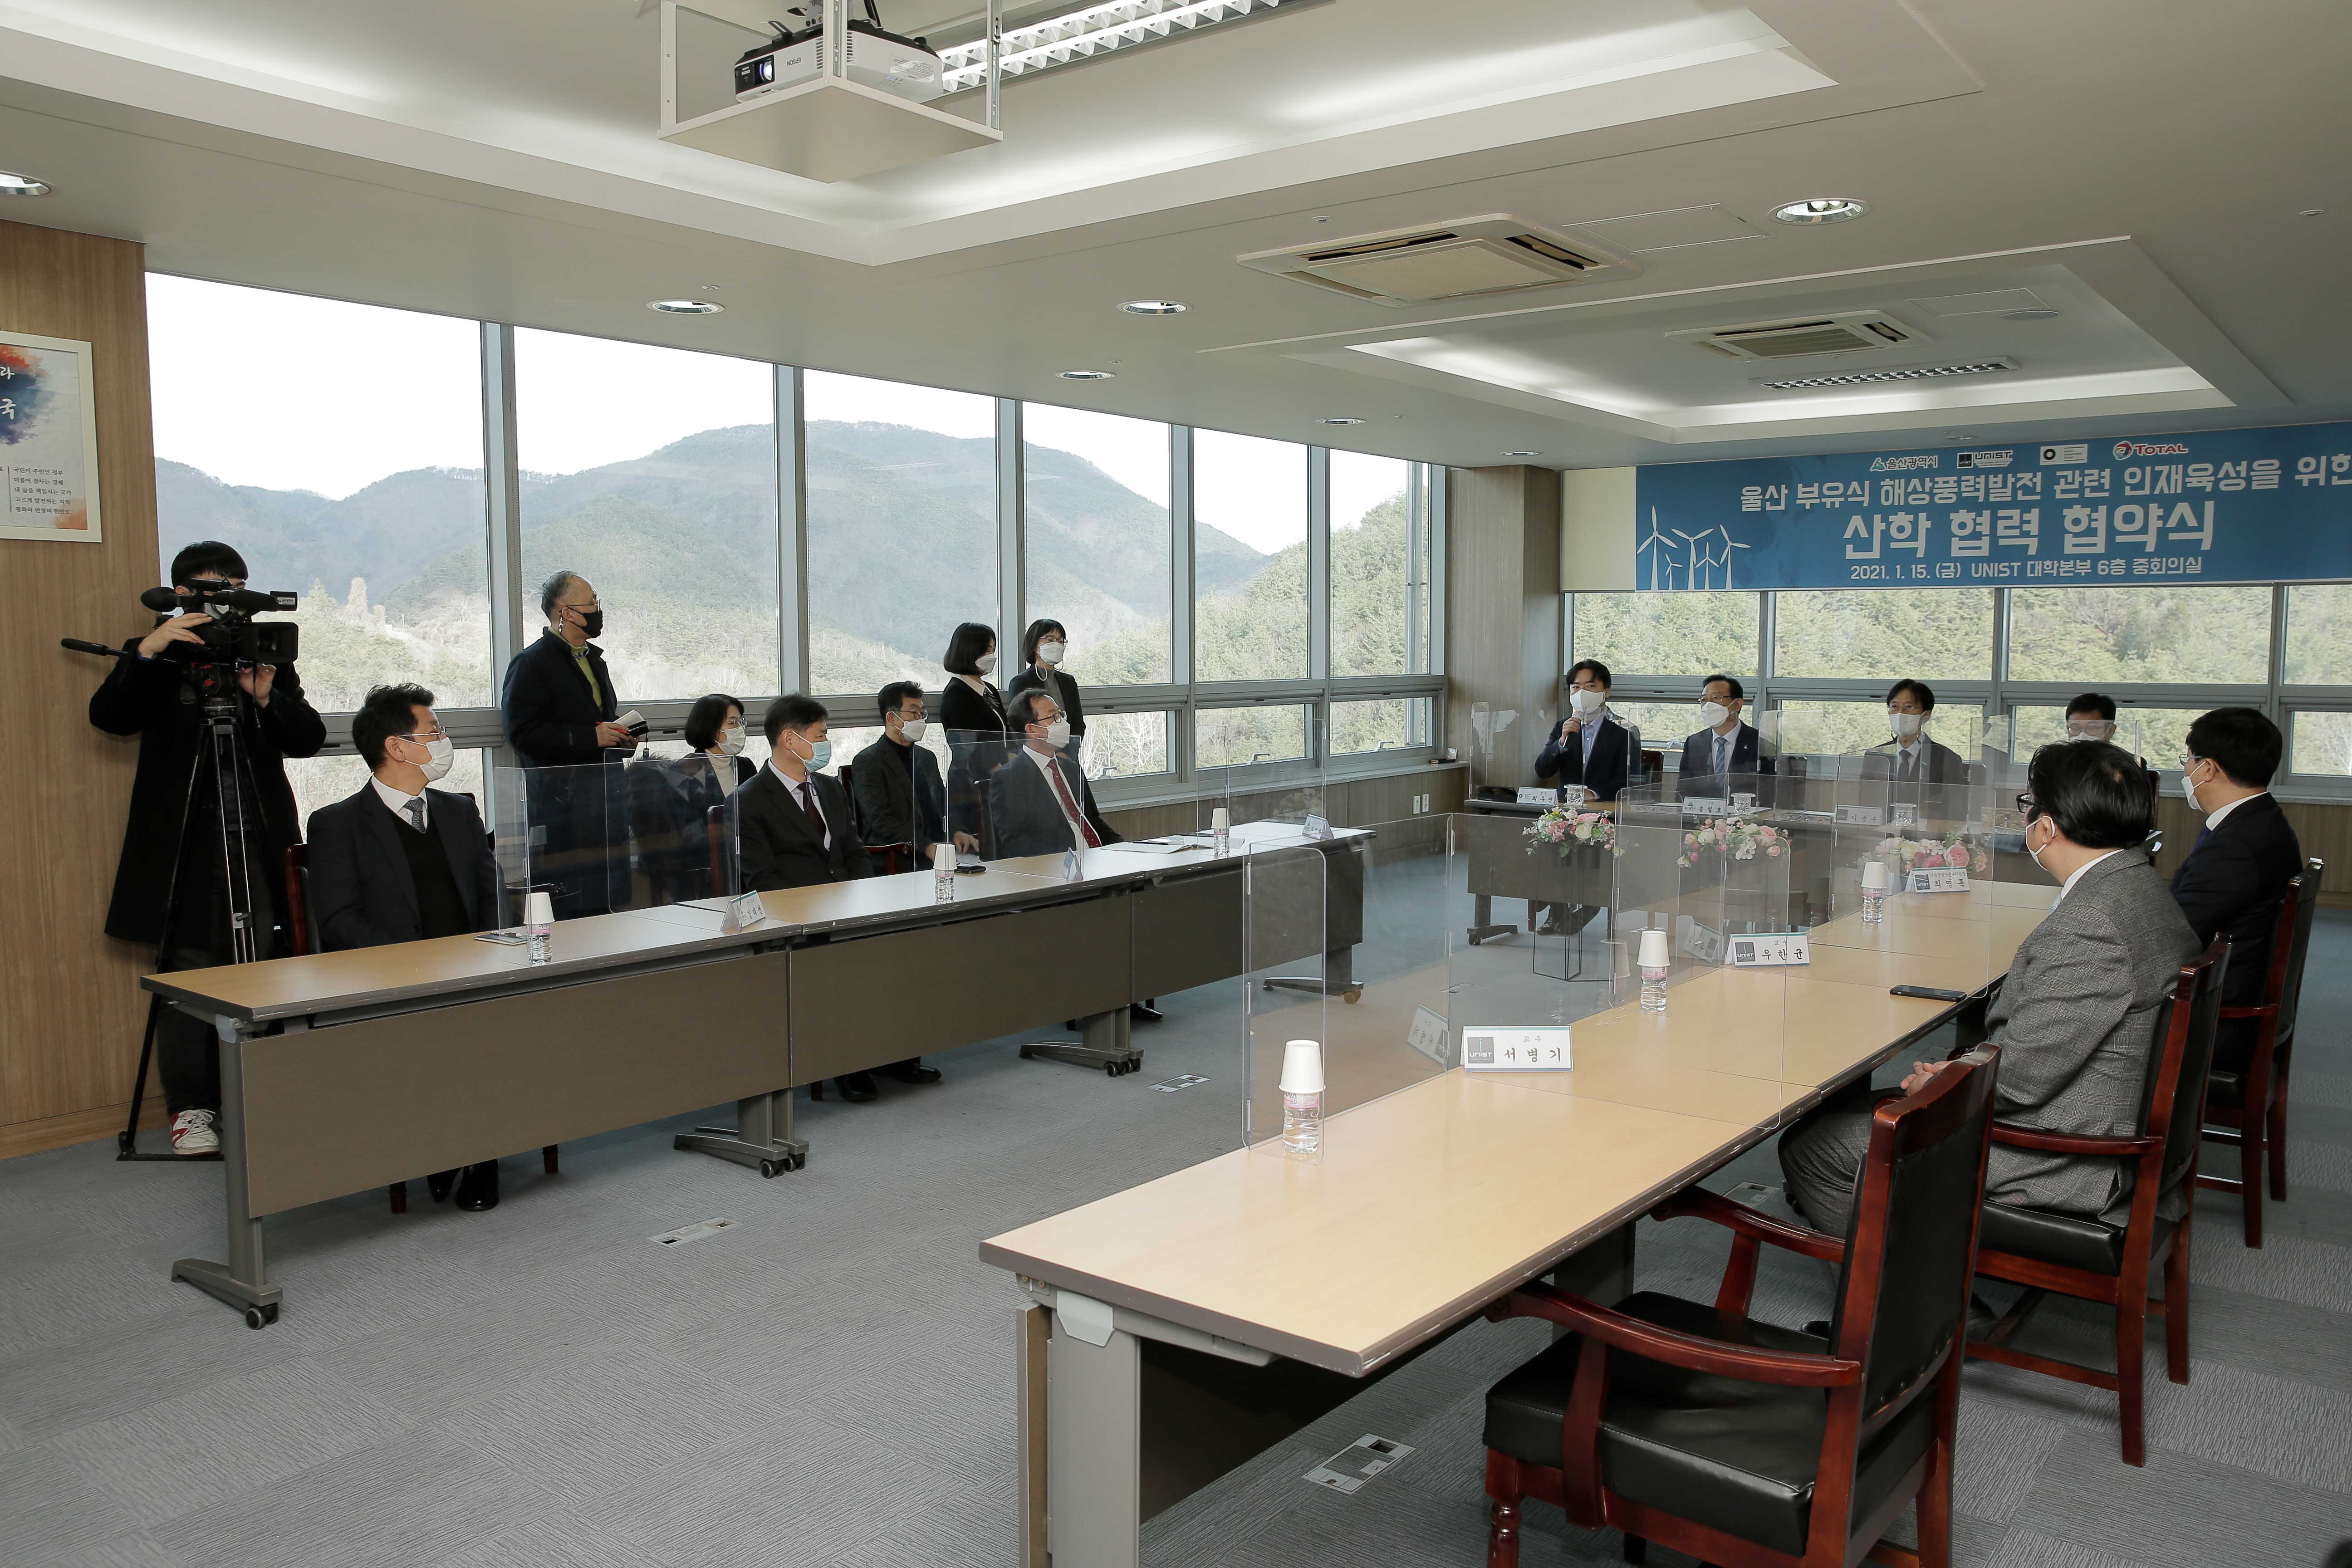 협약식에는 UNIST, 울산광역시, GIG와 토탈의 관계자들이 참석했다. | 사진: 김경채